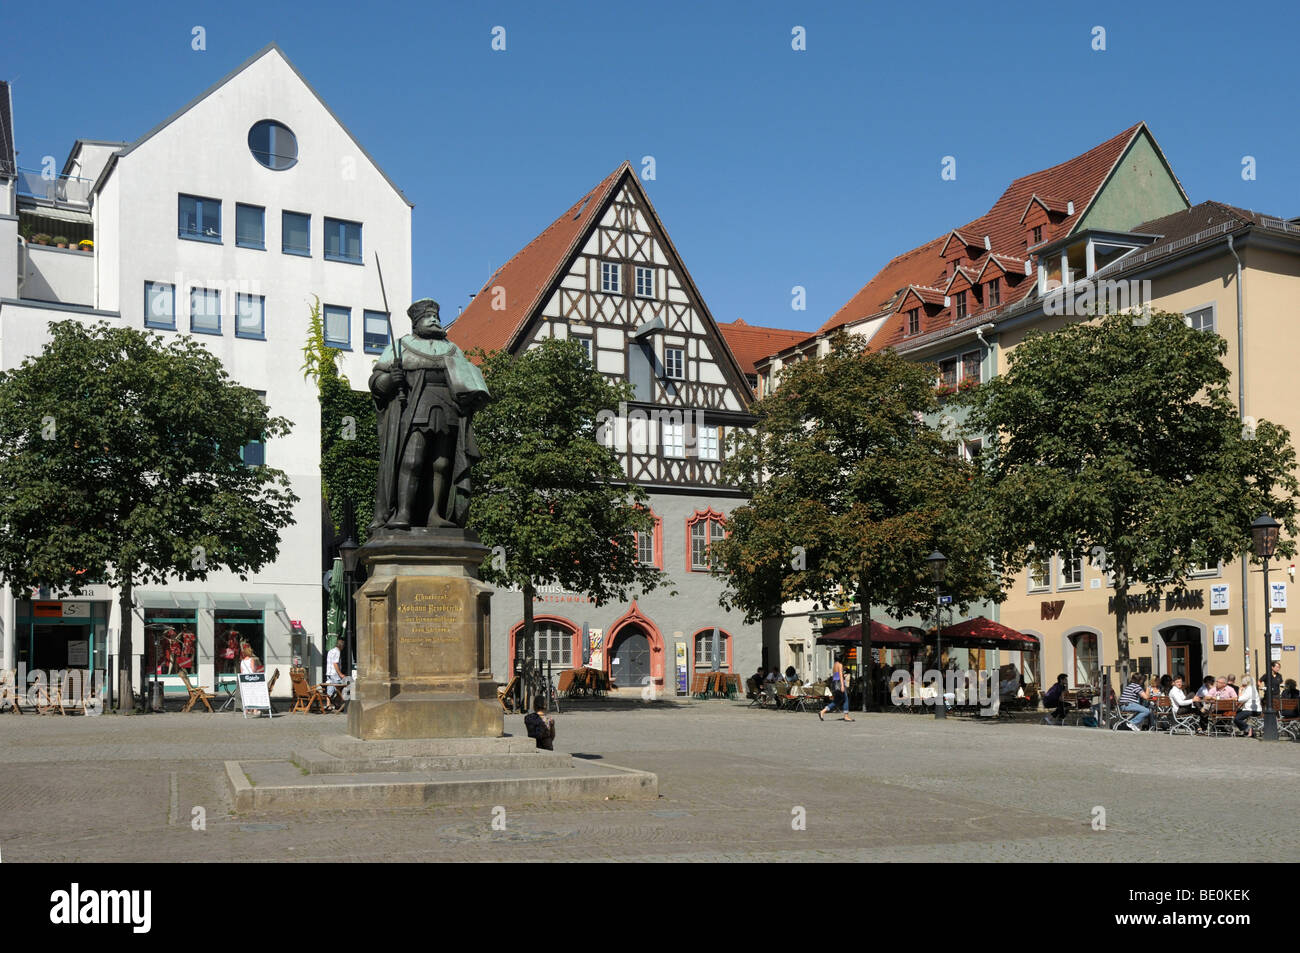 Stadtmuseum city museum, market place, Jena, Thuringia, Germany, Europe Stock Photo